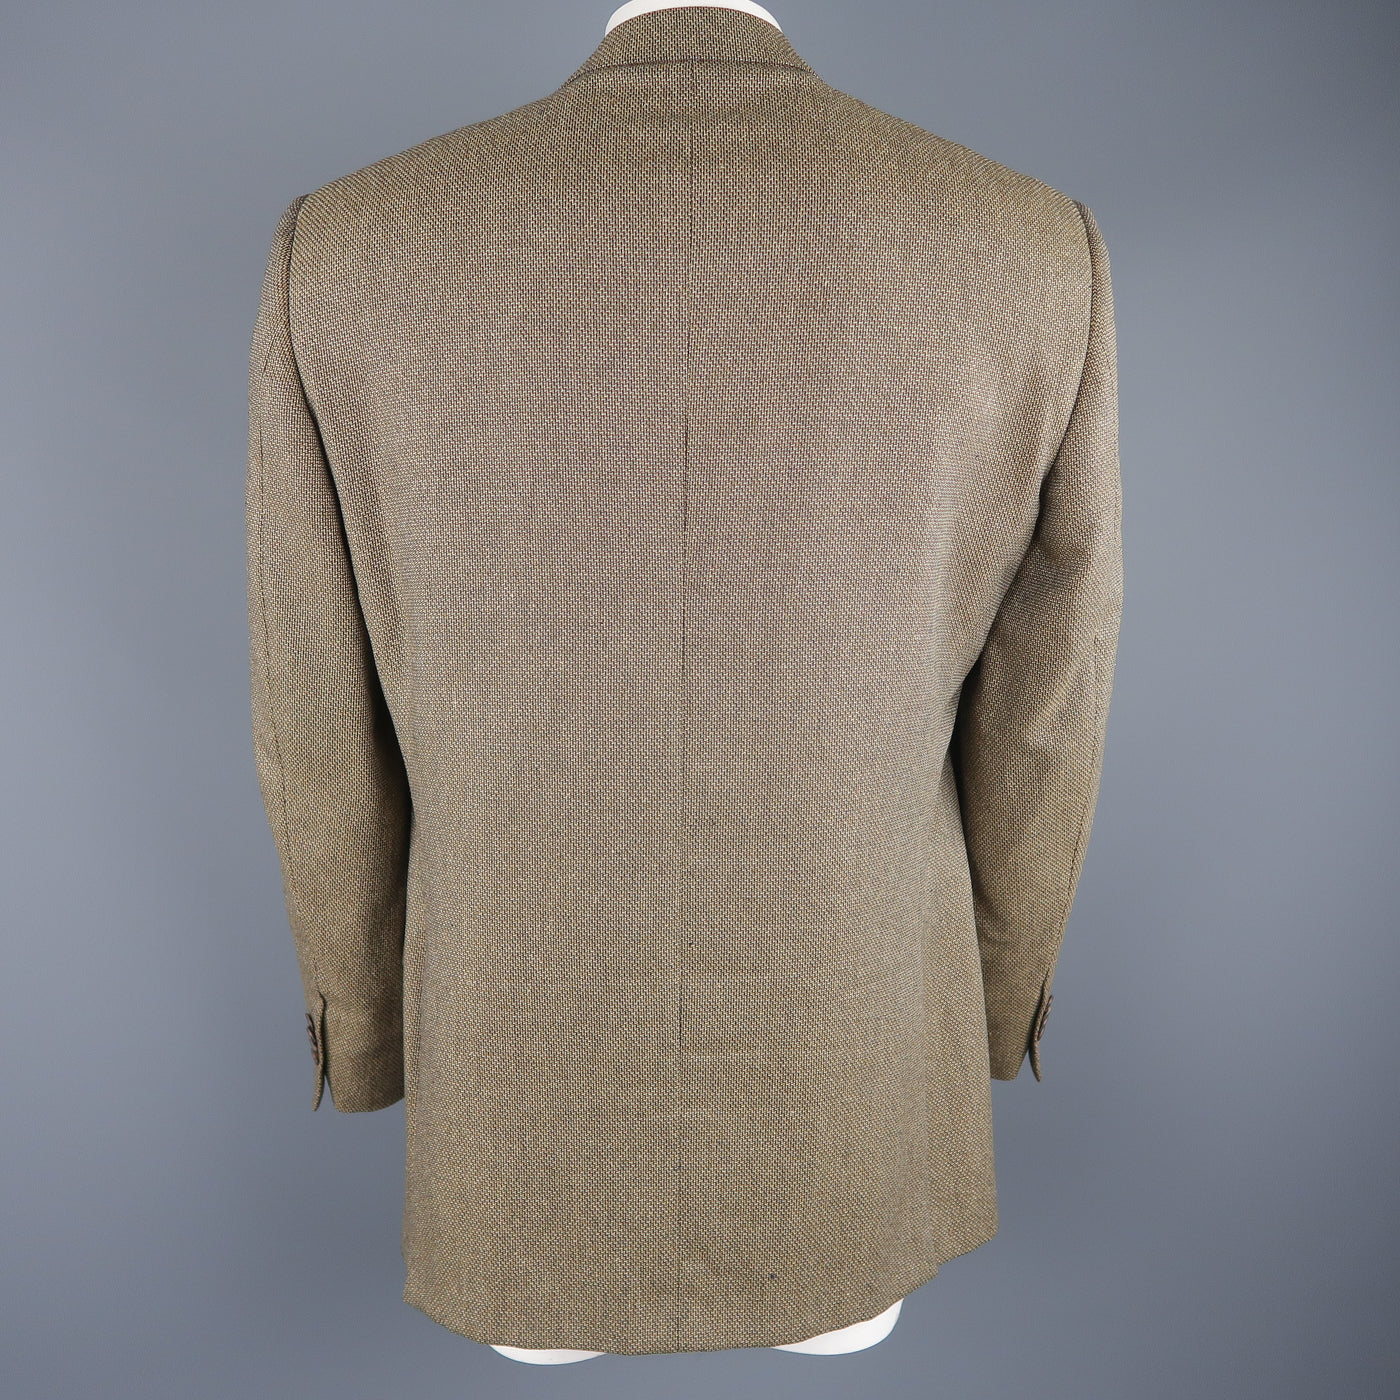 ERMENEGILDO ZEGNA 44 Tan Woven Silk / Wool Nailhead Sport Coat